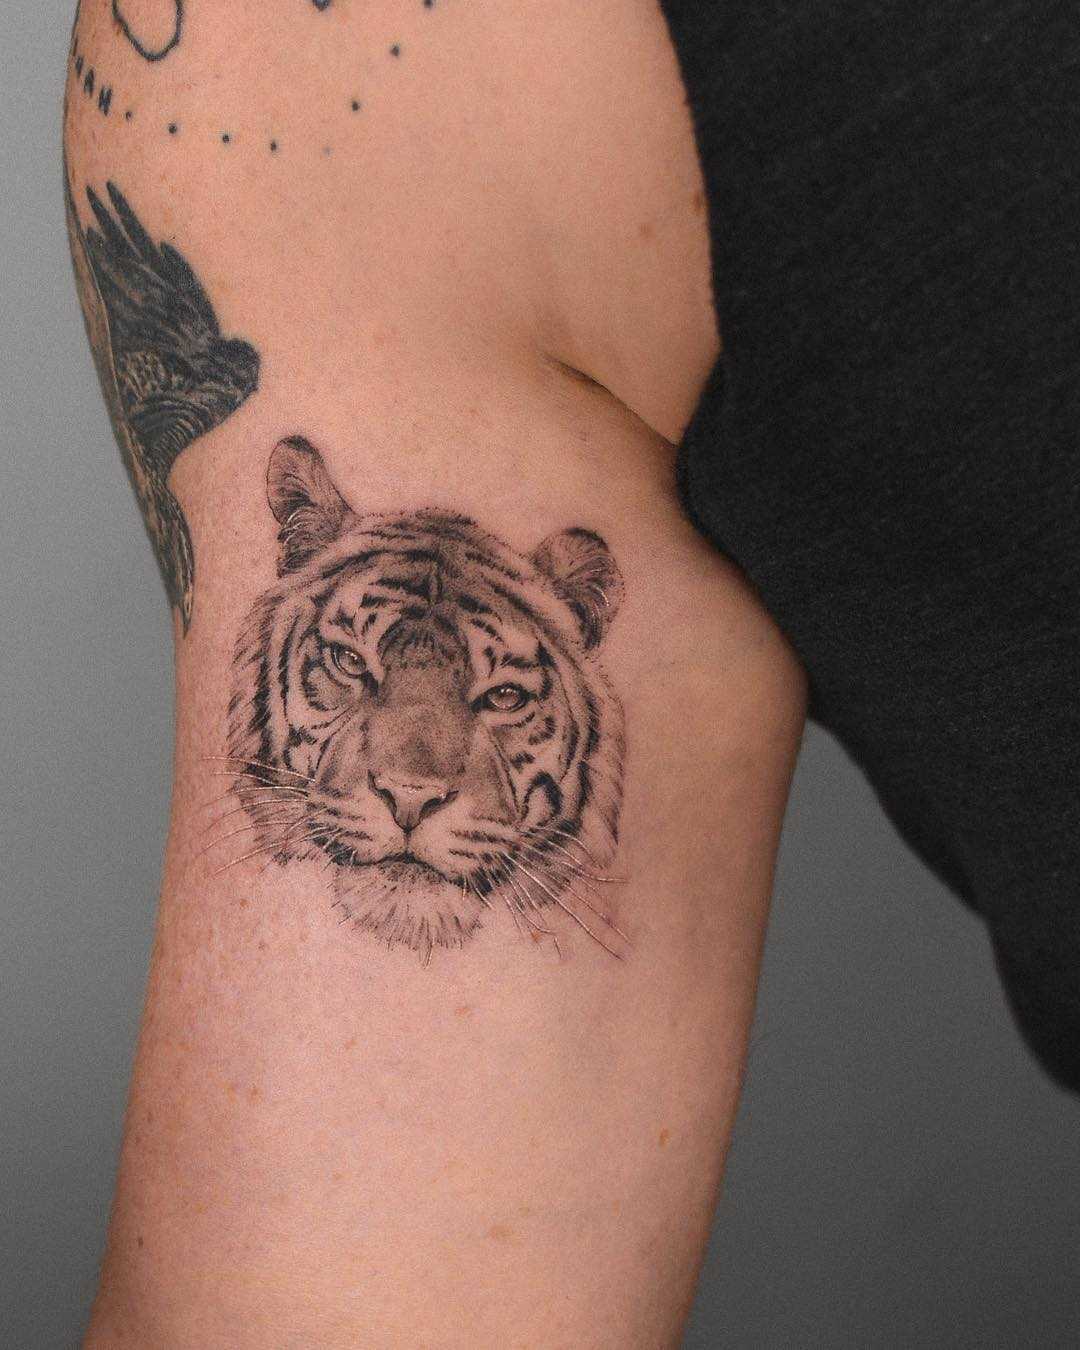 Tiger head tattoo 